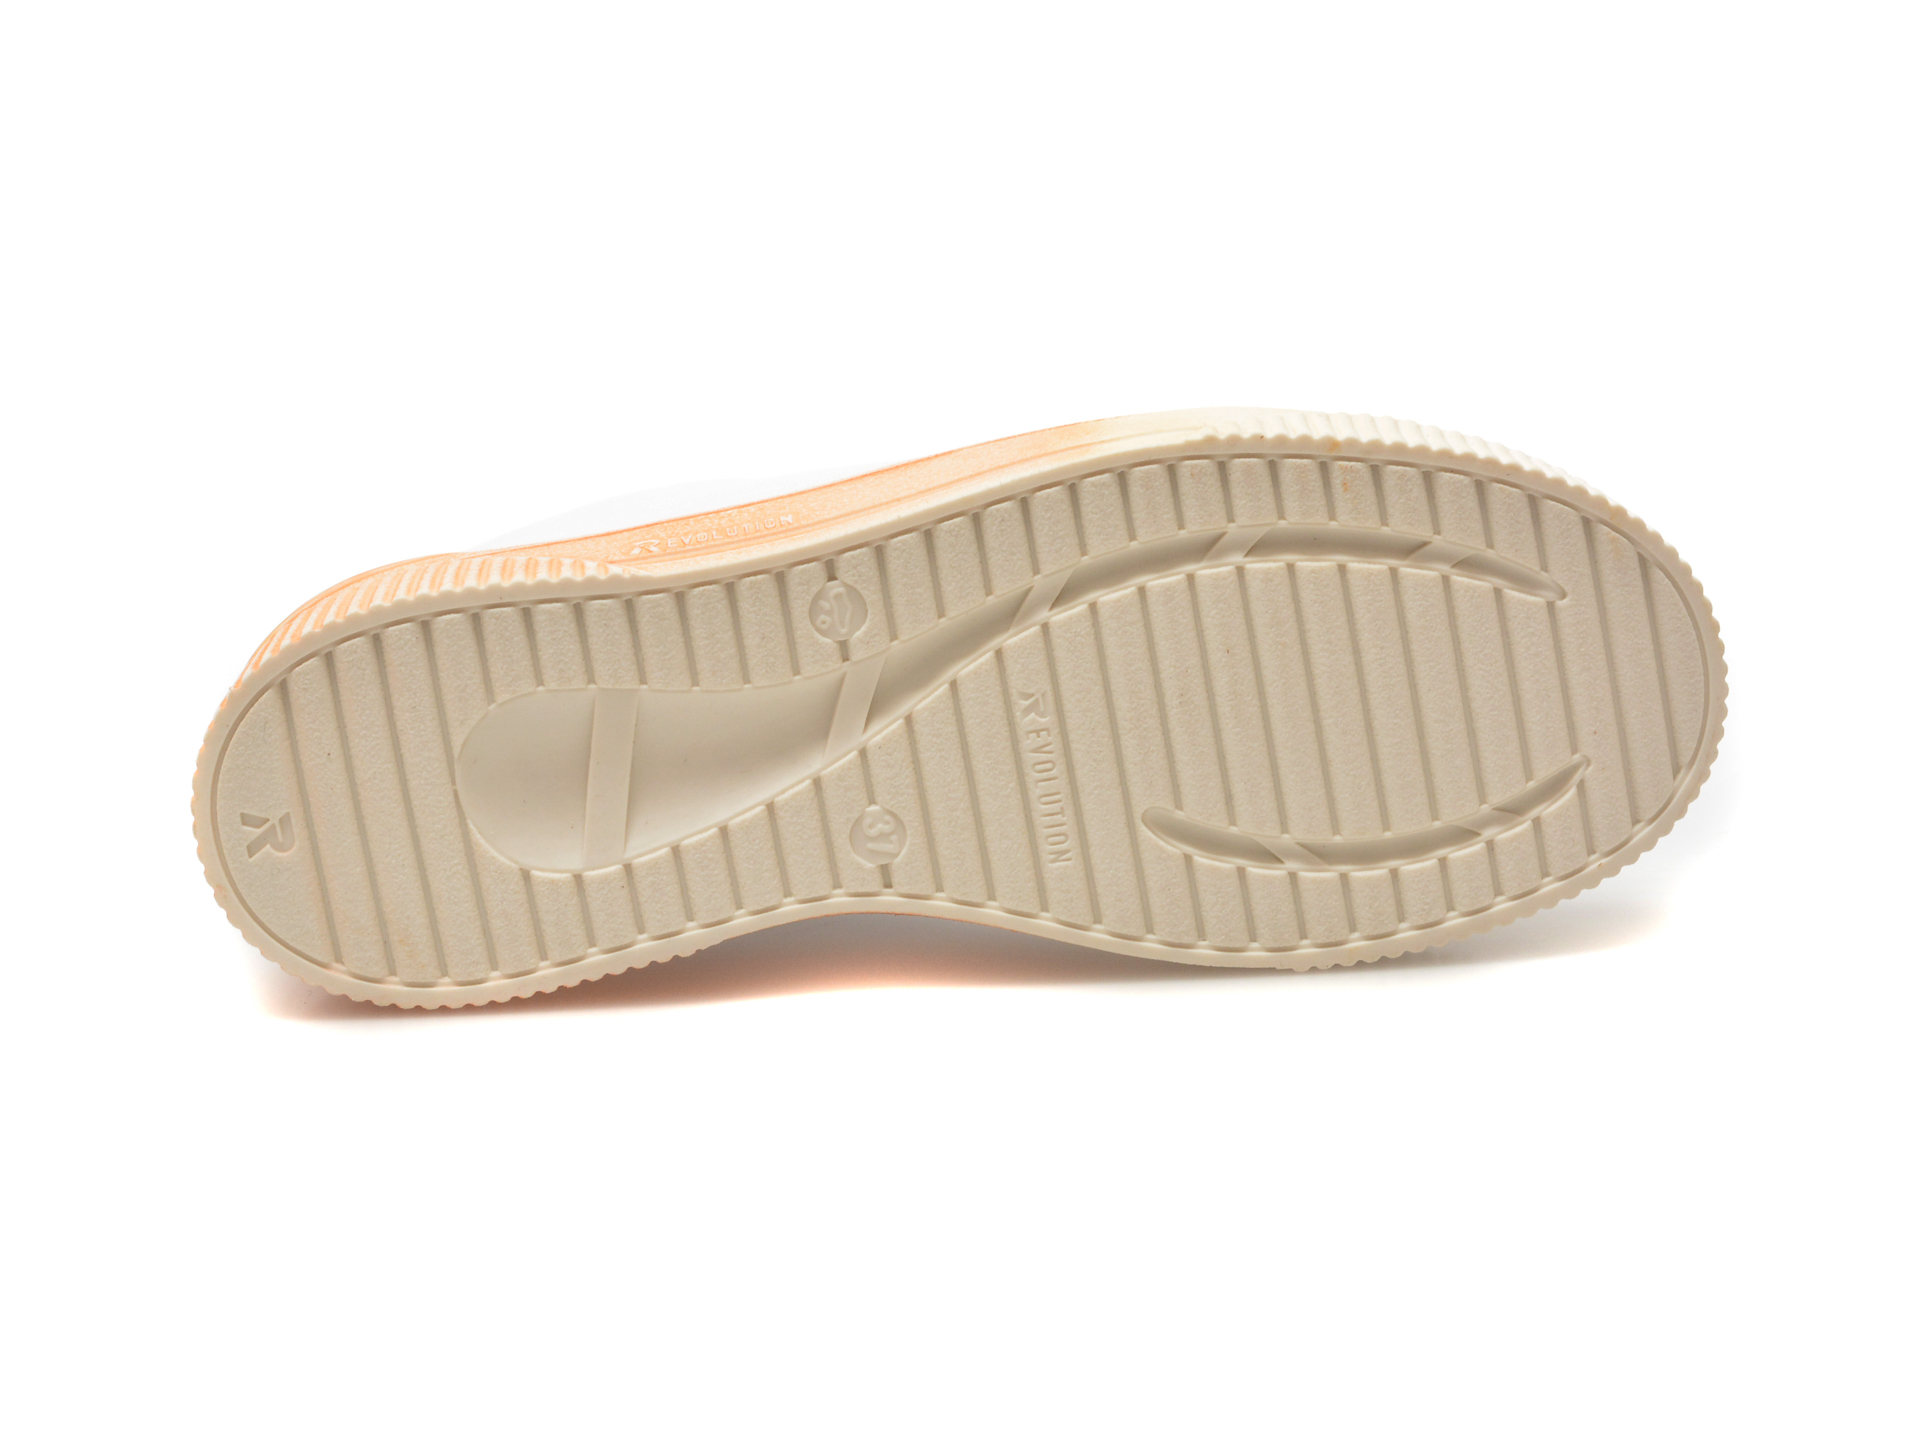 Pantofi casul RIEKER albi, W0704, din piele naturala